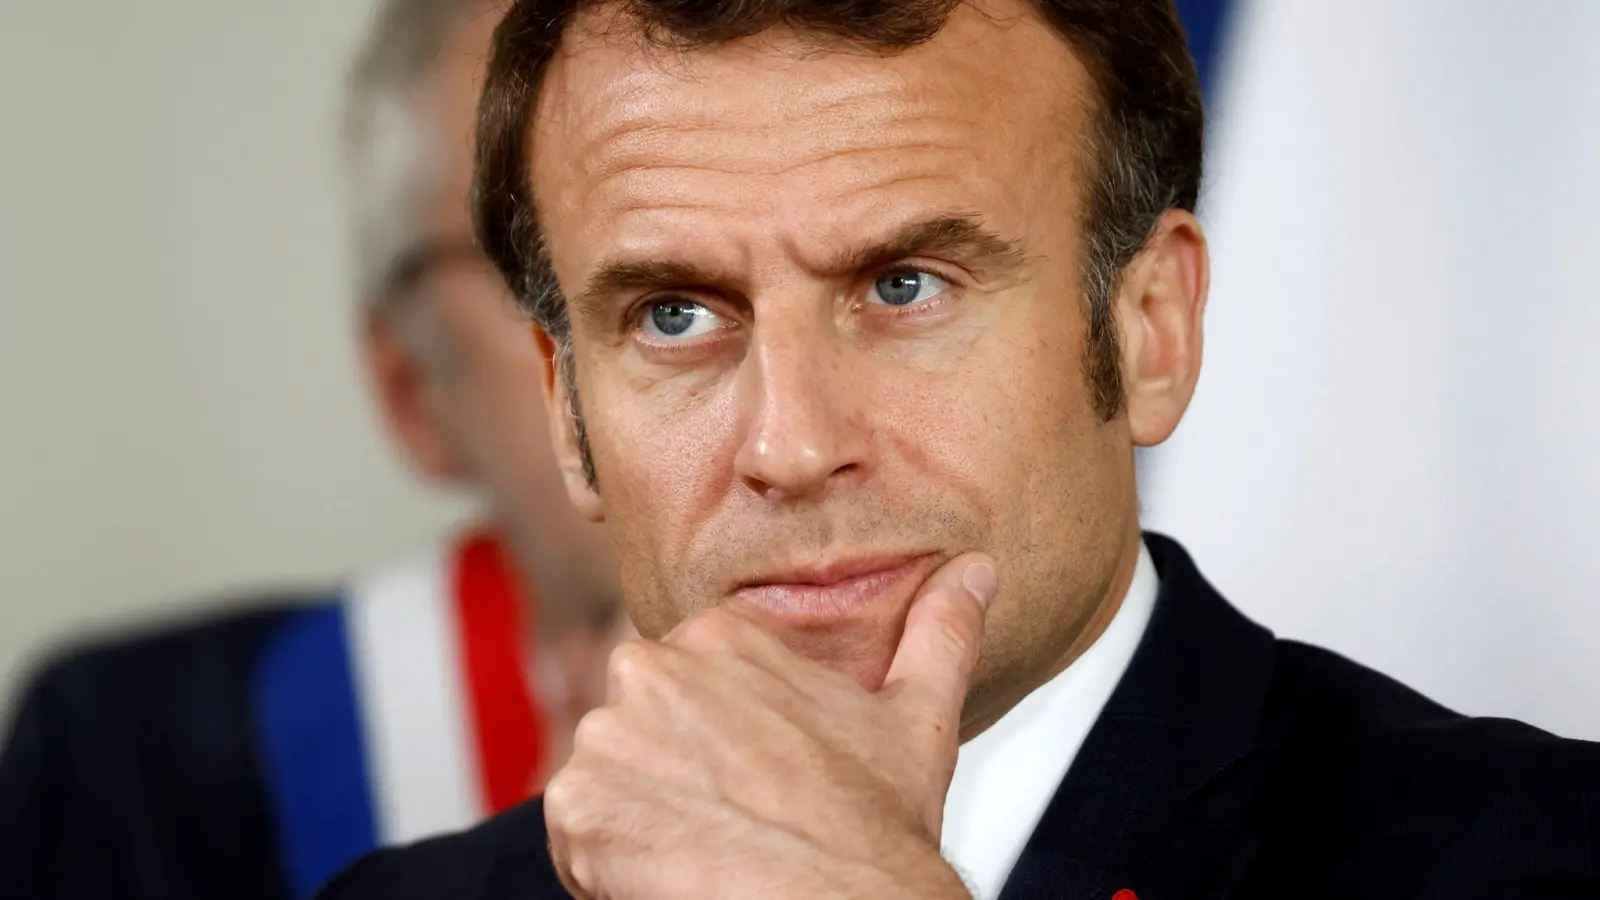 Frankreichs Präsident Emmanuel Macron will die Rentenreform durchsetzen - das Projekt hat ihn allerdings bereits viel Sympathie in der Bevölkerung gekostet. (Foto: Gonzalo Fuentes/Pool Reuters/AP/dpa)